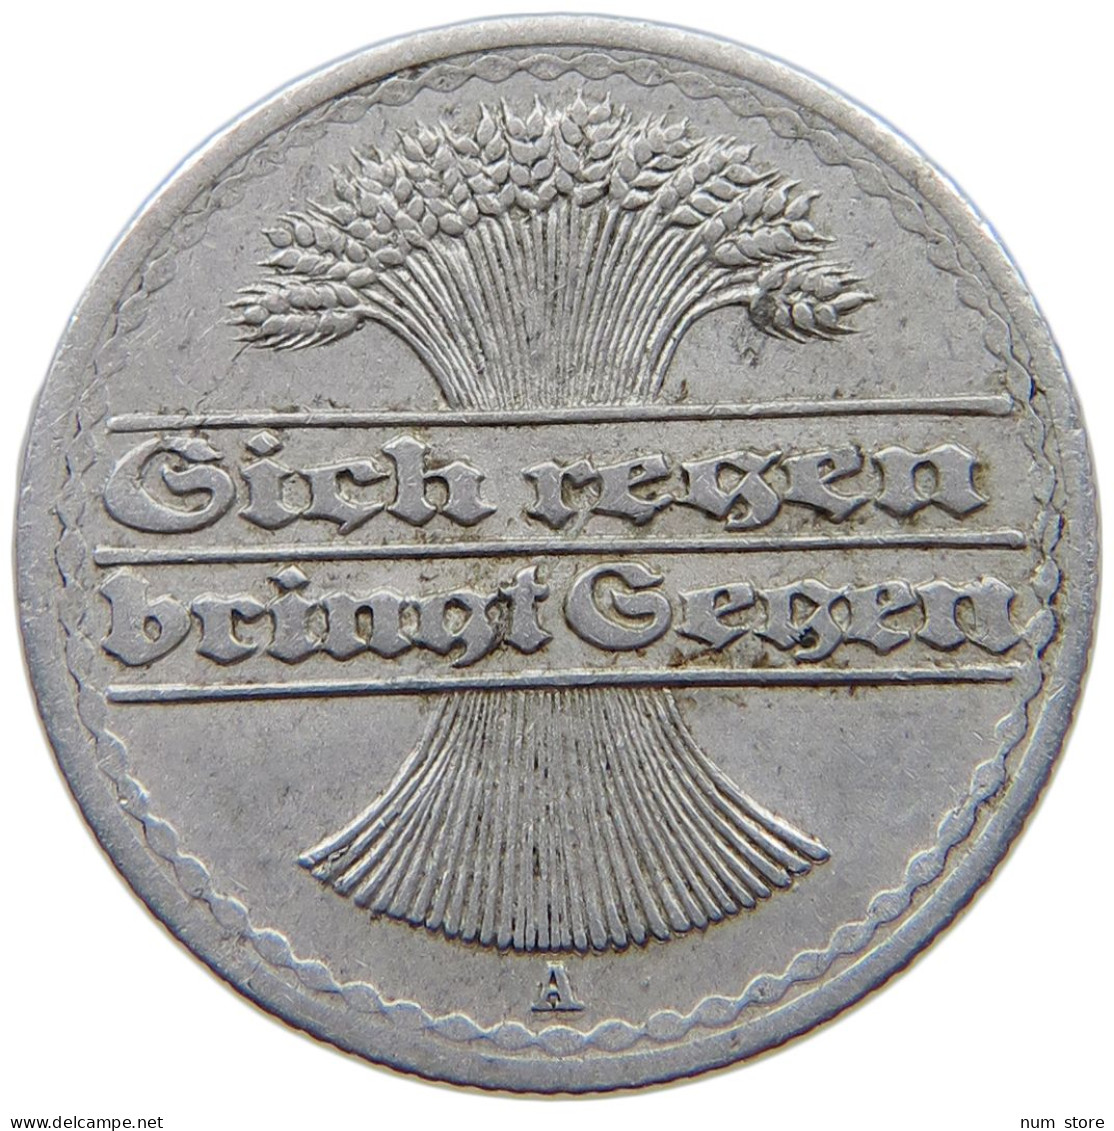 WEIMARER REPUBLIK 50 PFENNIG 1919 A  #a089 0031 - 50 Rentenpfennig & 50 Reichspfennig